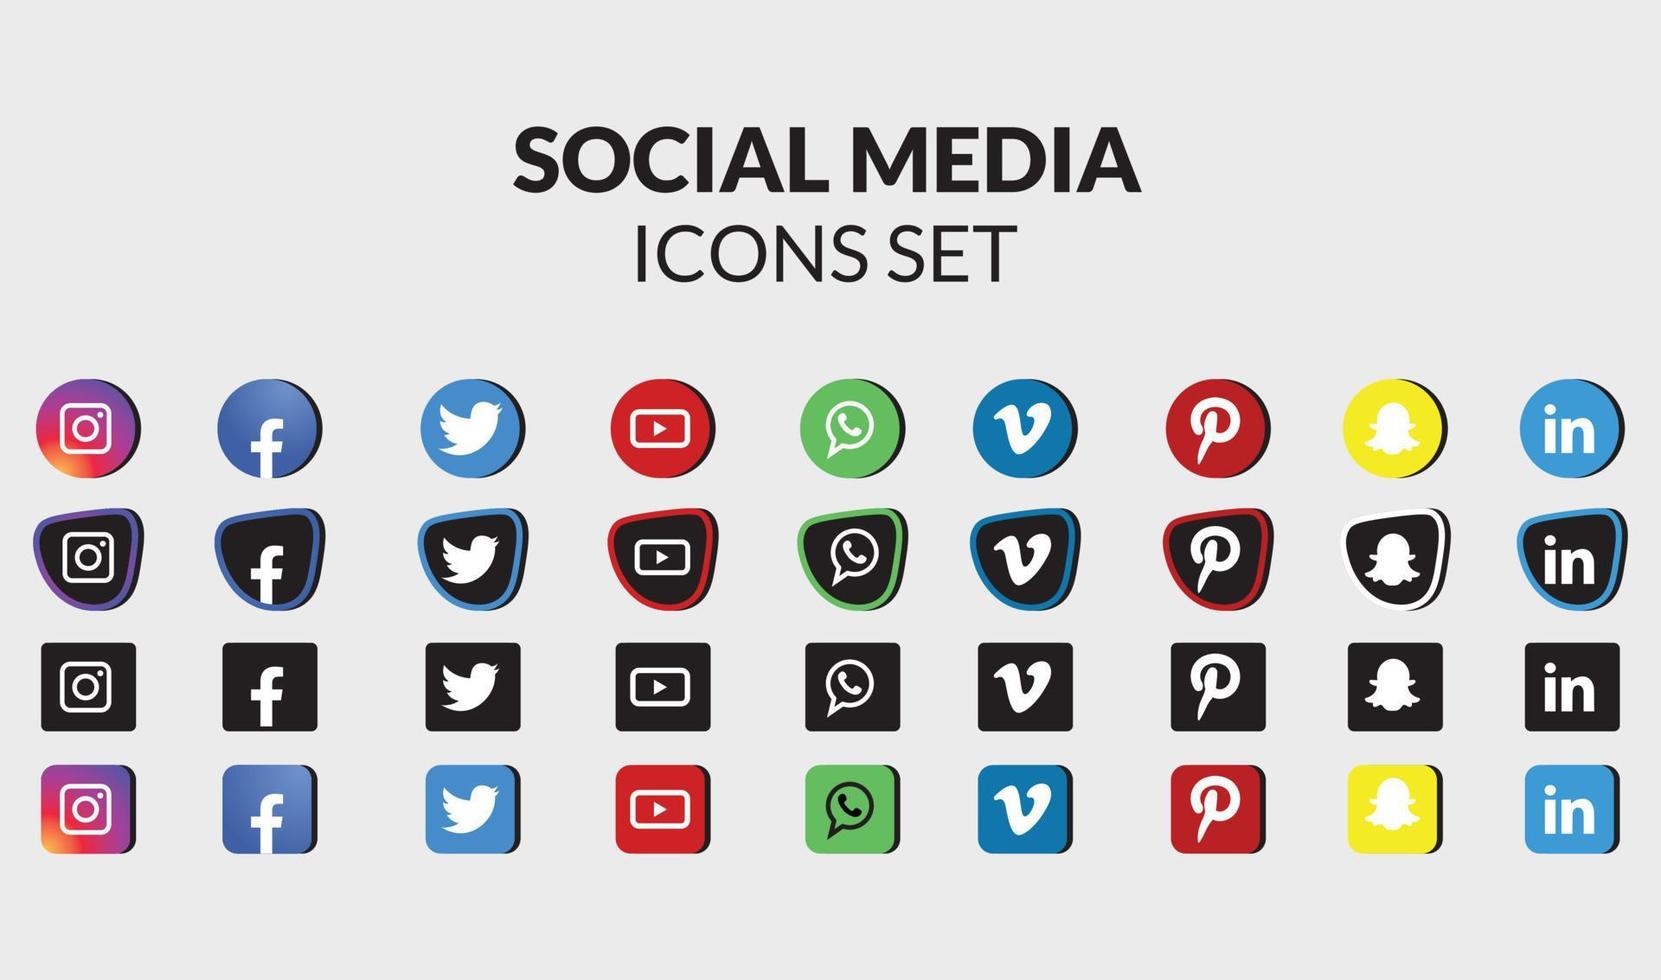 beliebte social-media-symbole gesetzt. vektor